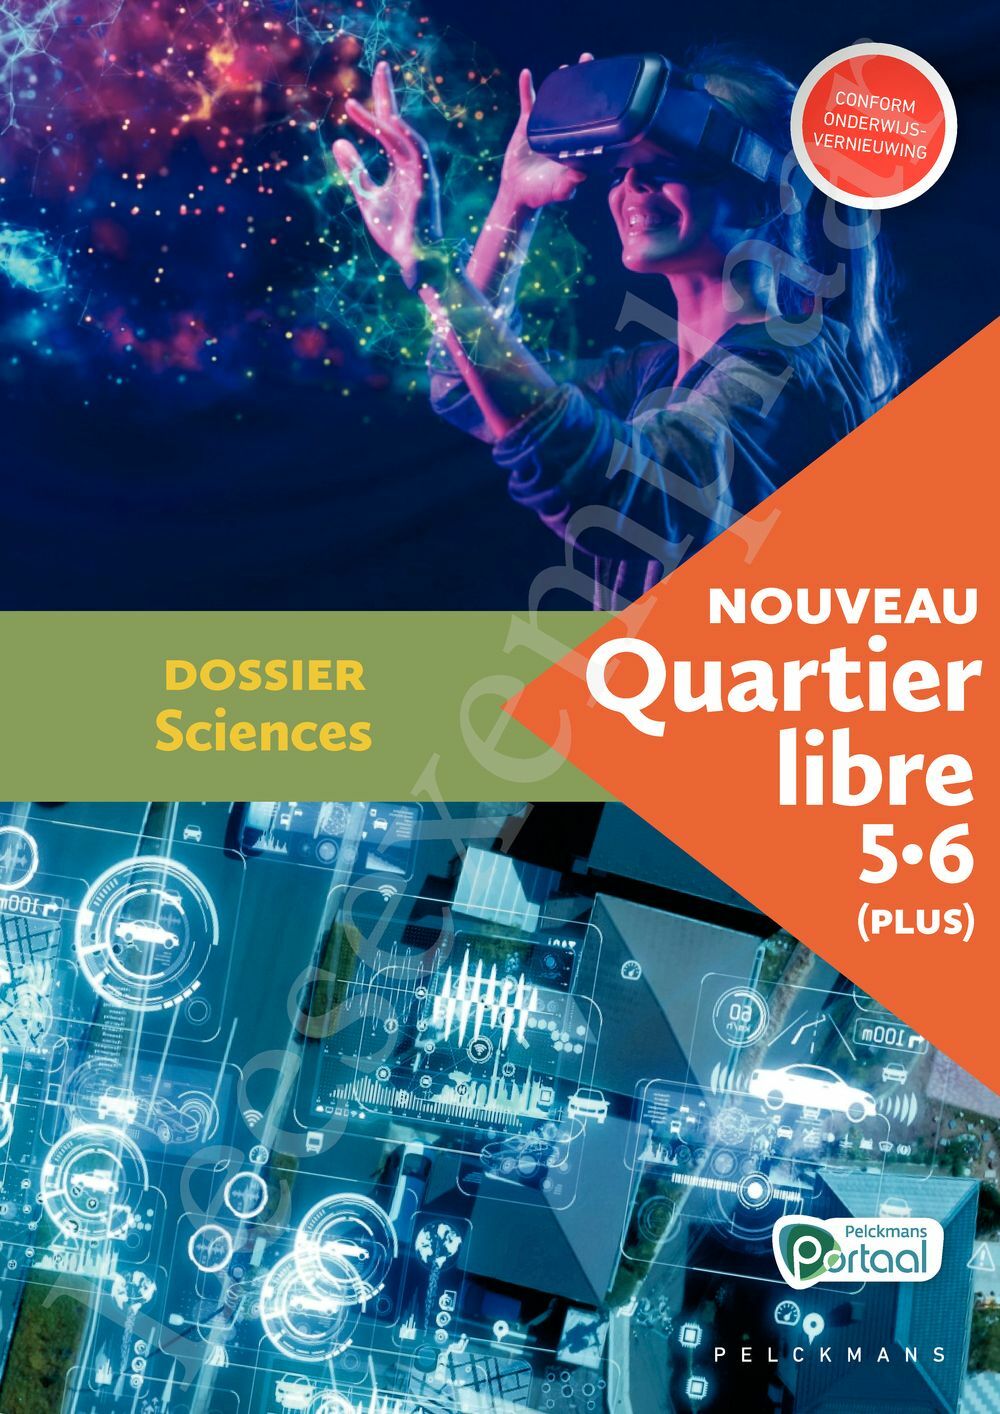 Preview: Nouveau Quartier libre 5 / 6 (Plus) Dossier Sciences (incl. Pelckmans Portaal)